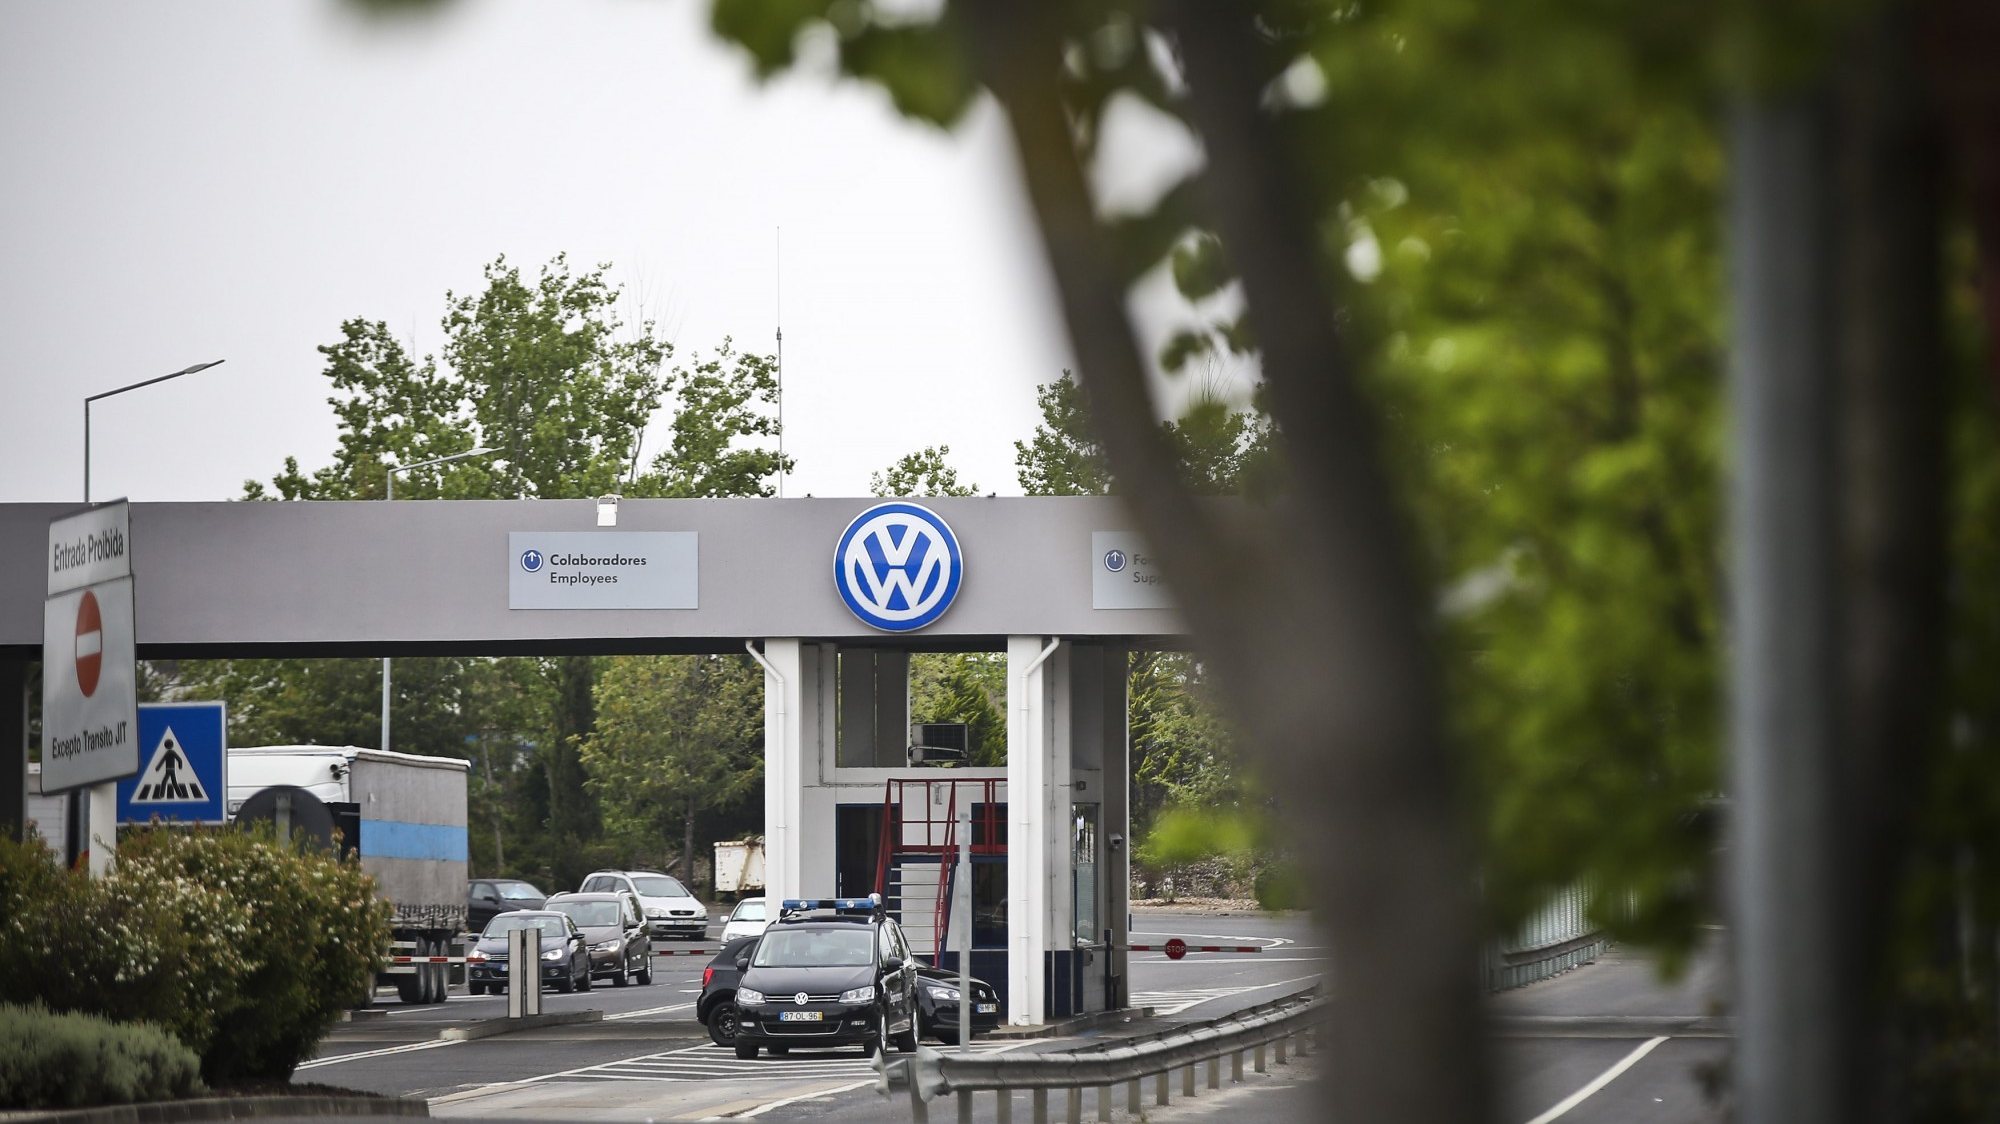 Entrada dos trabalhadores da fábrica Autoeuropa do grupo alemão Volkswagen, numa altura em que se celebram os 20 anos do início da produção da Autoeuropa em Portugal, em Palmela, concelho de Setúbal, 24 de abril de 2015